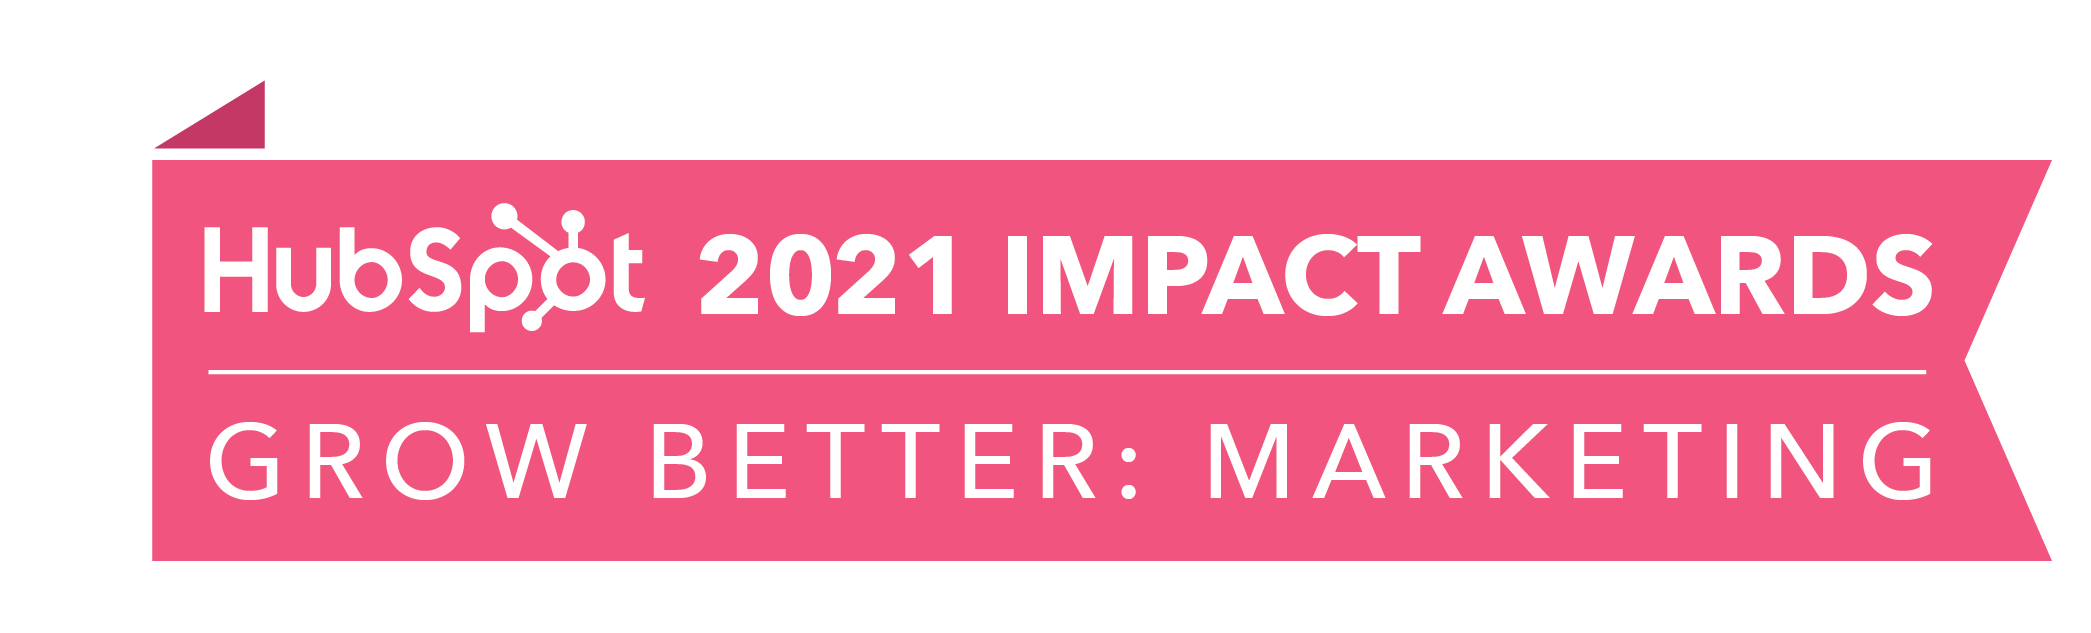 HubSpot_ImpactAwards_2021_GBMarketing2-1